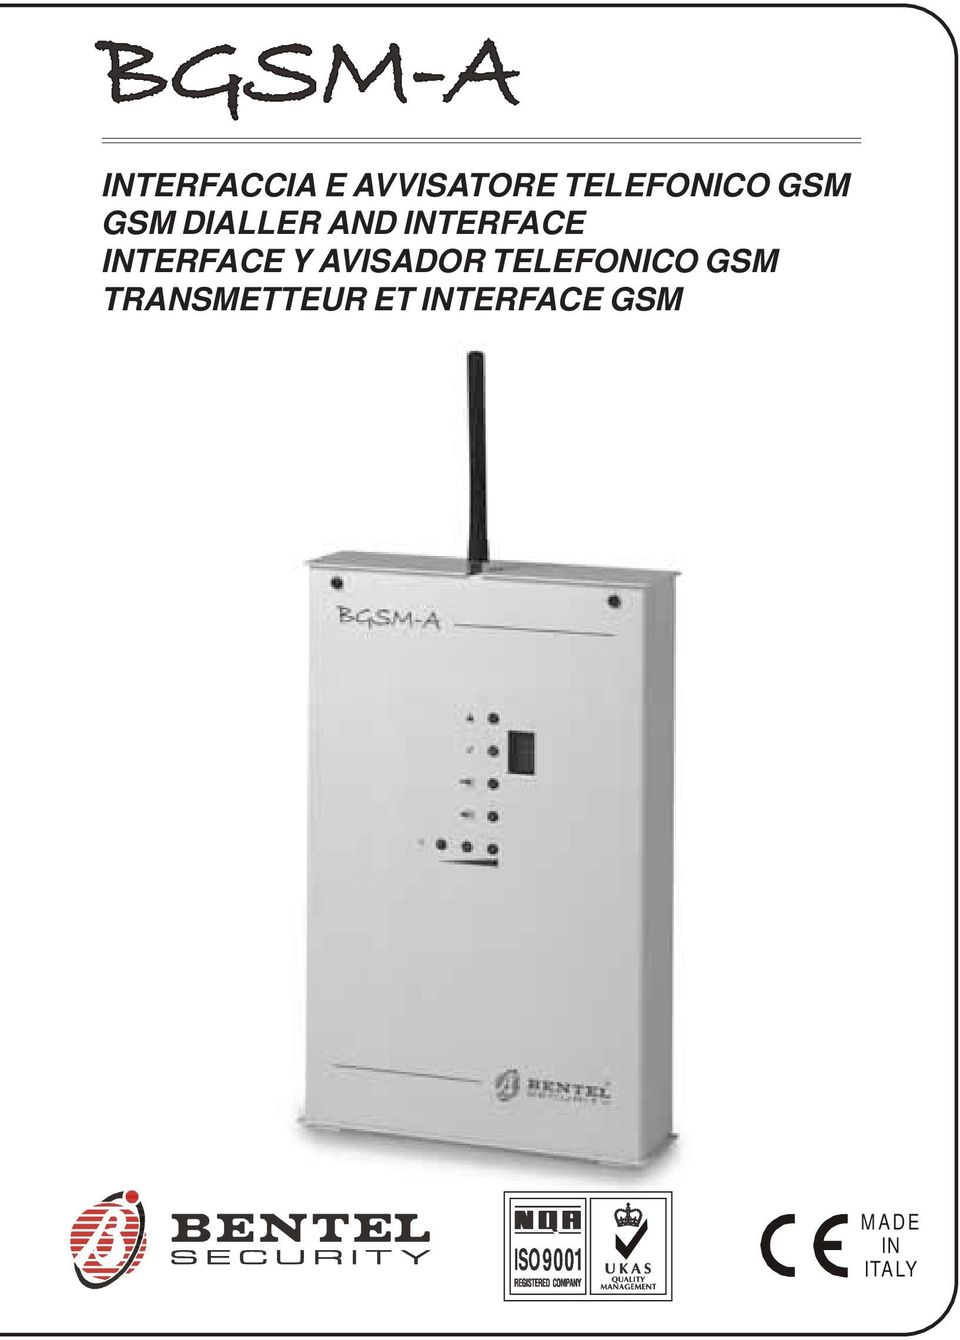 INTERFACE Y AVISADOR TELEFONICO GSM